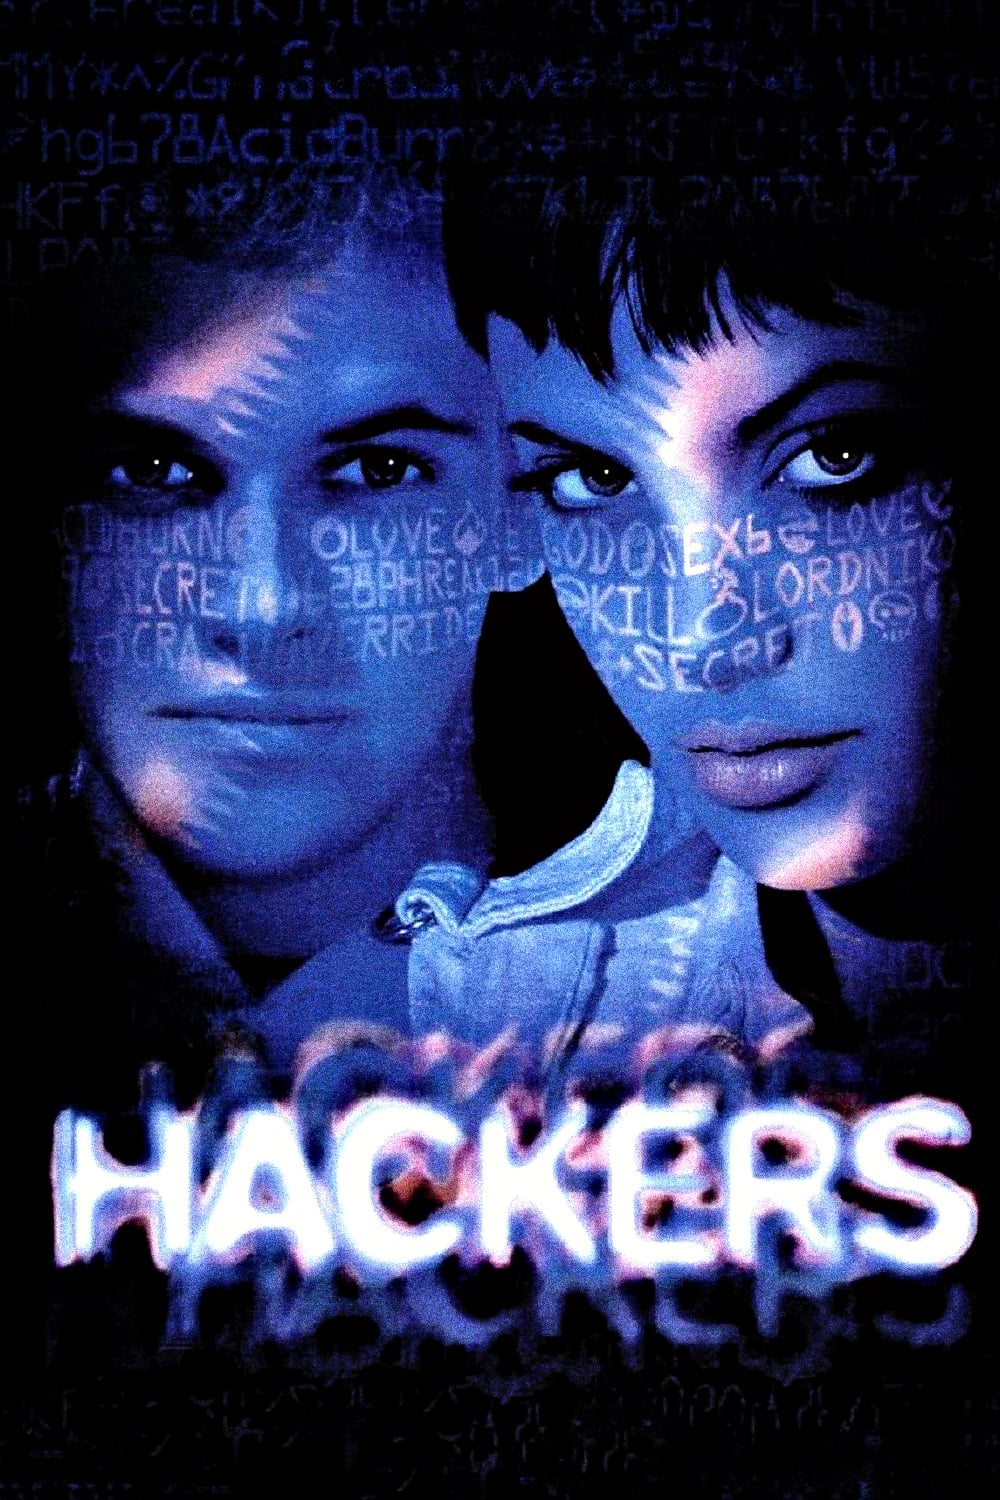 Hackers, piratas informáticos